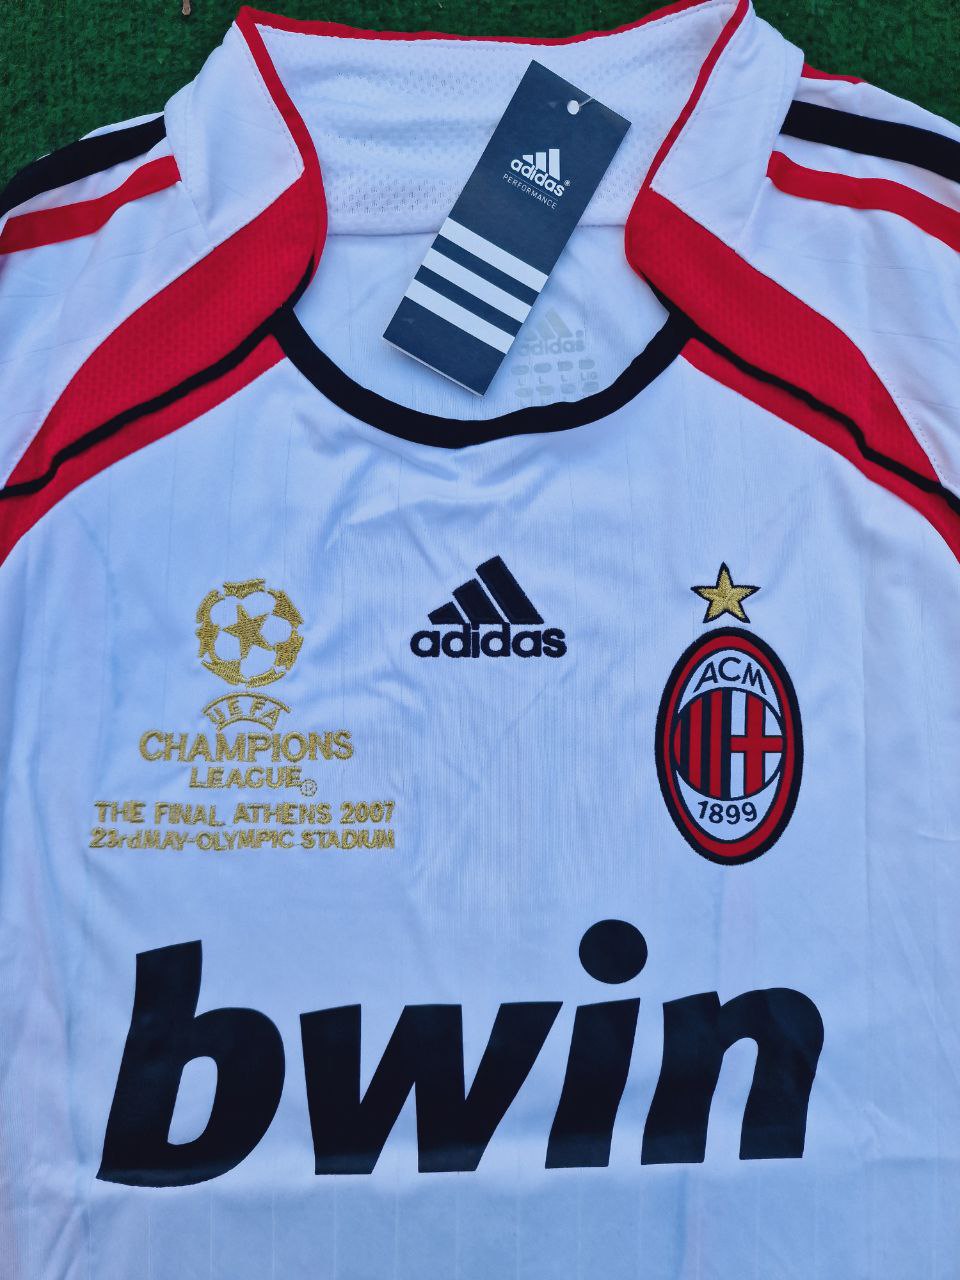 Kaká Leite Milan White Retro Football Jersey